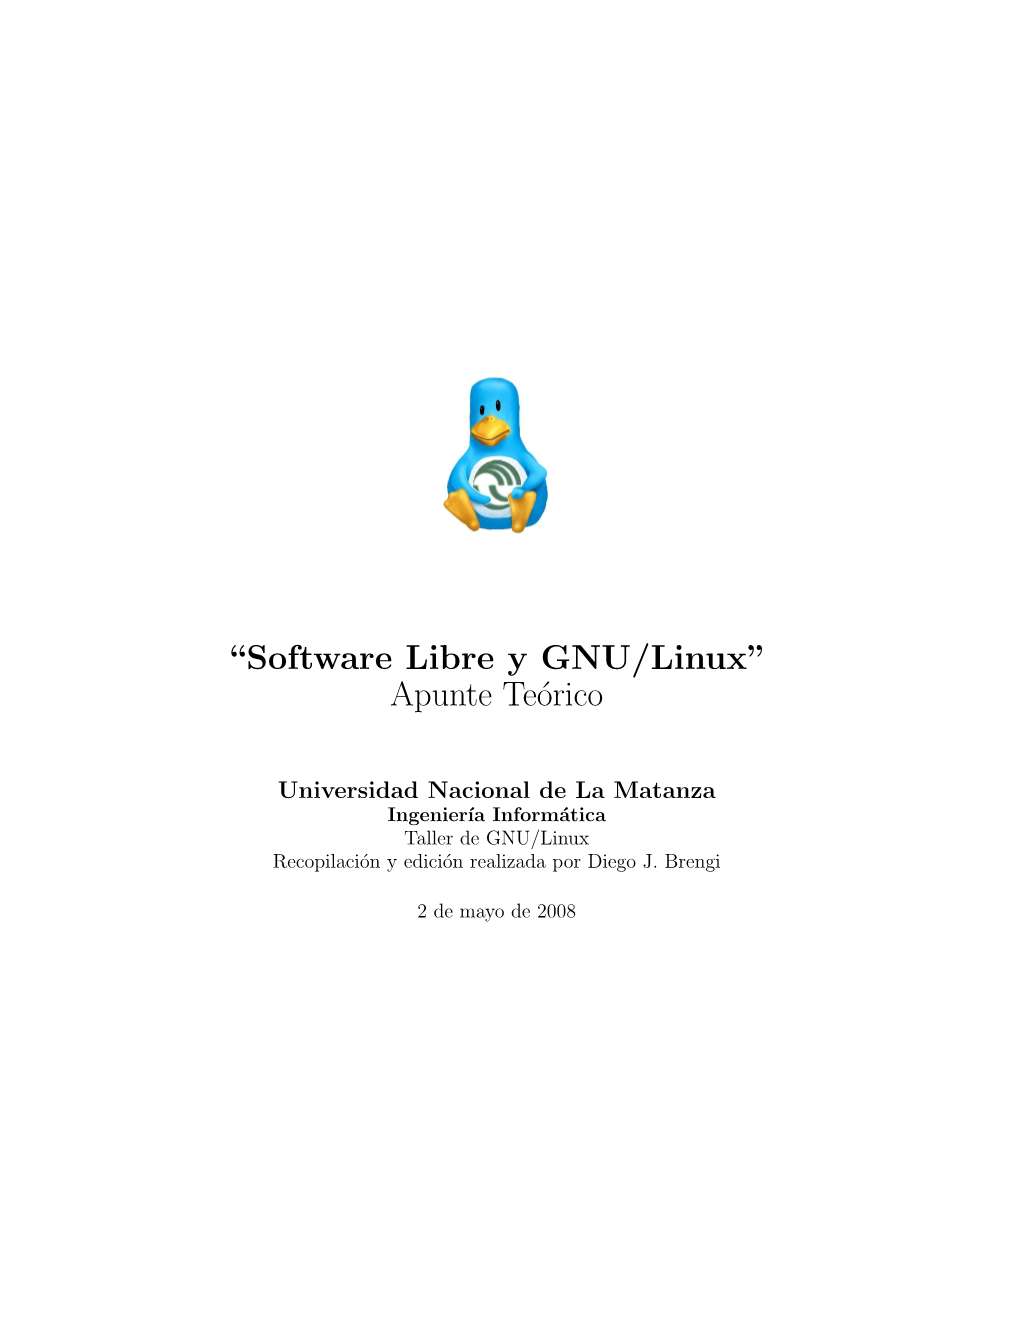 “Software Libre Y GNU/Linux” Apunte Teórico